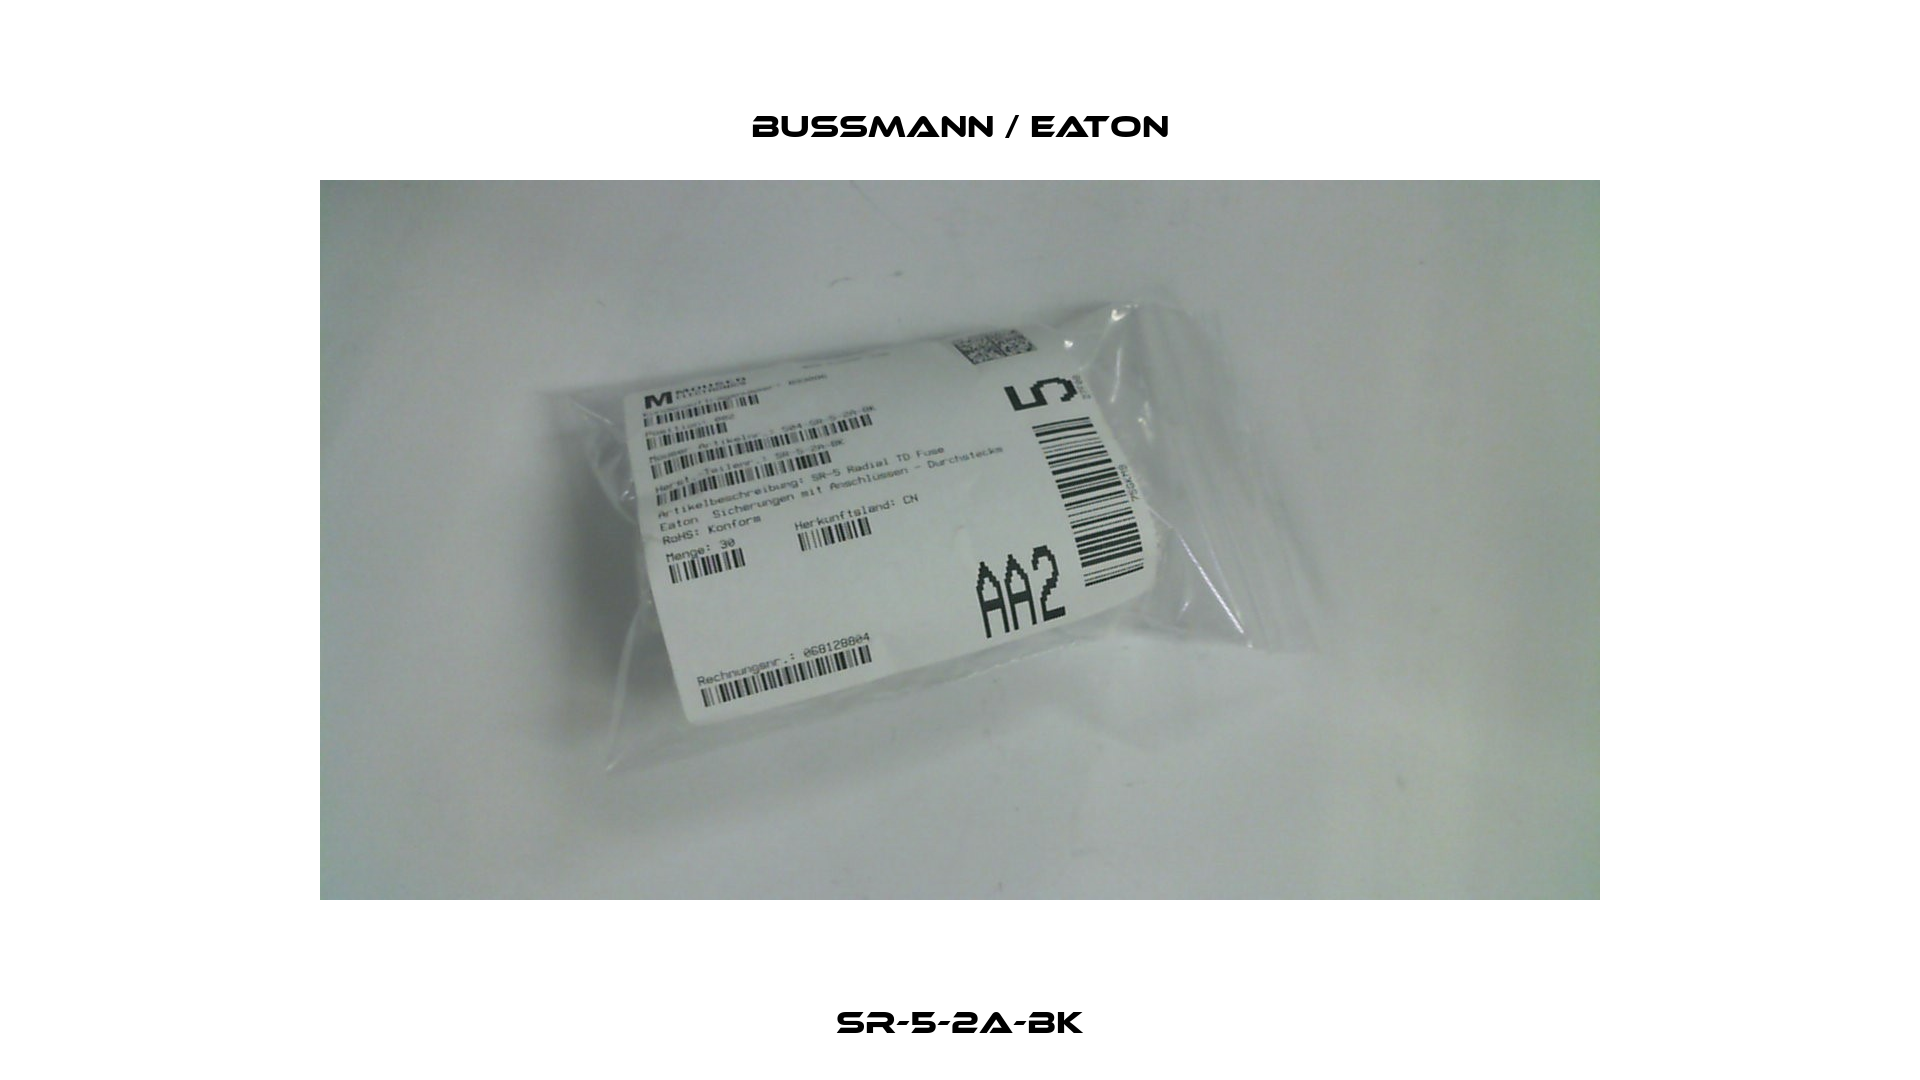 SR-5-2A-BK BUSSMANN / EATON